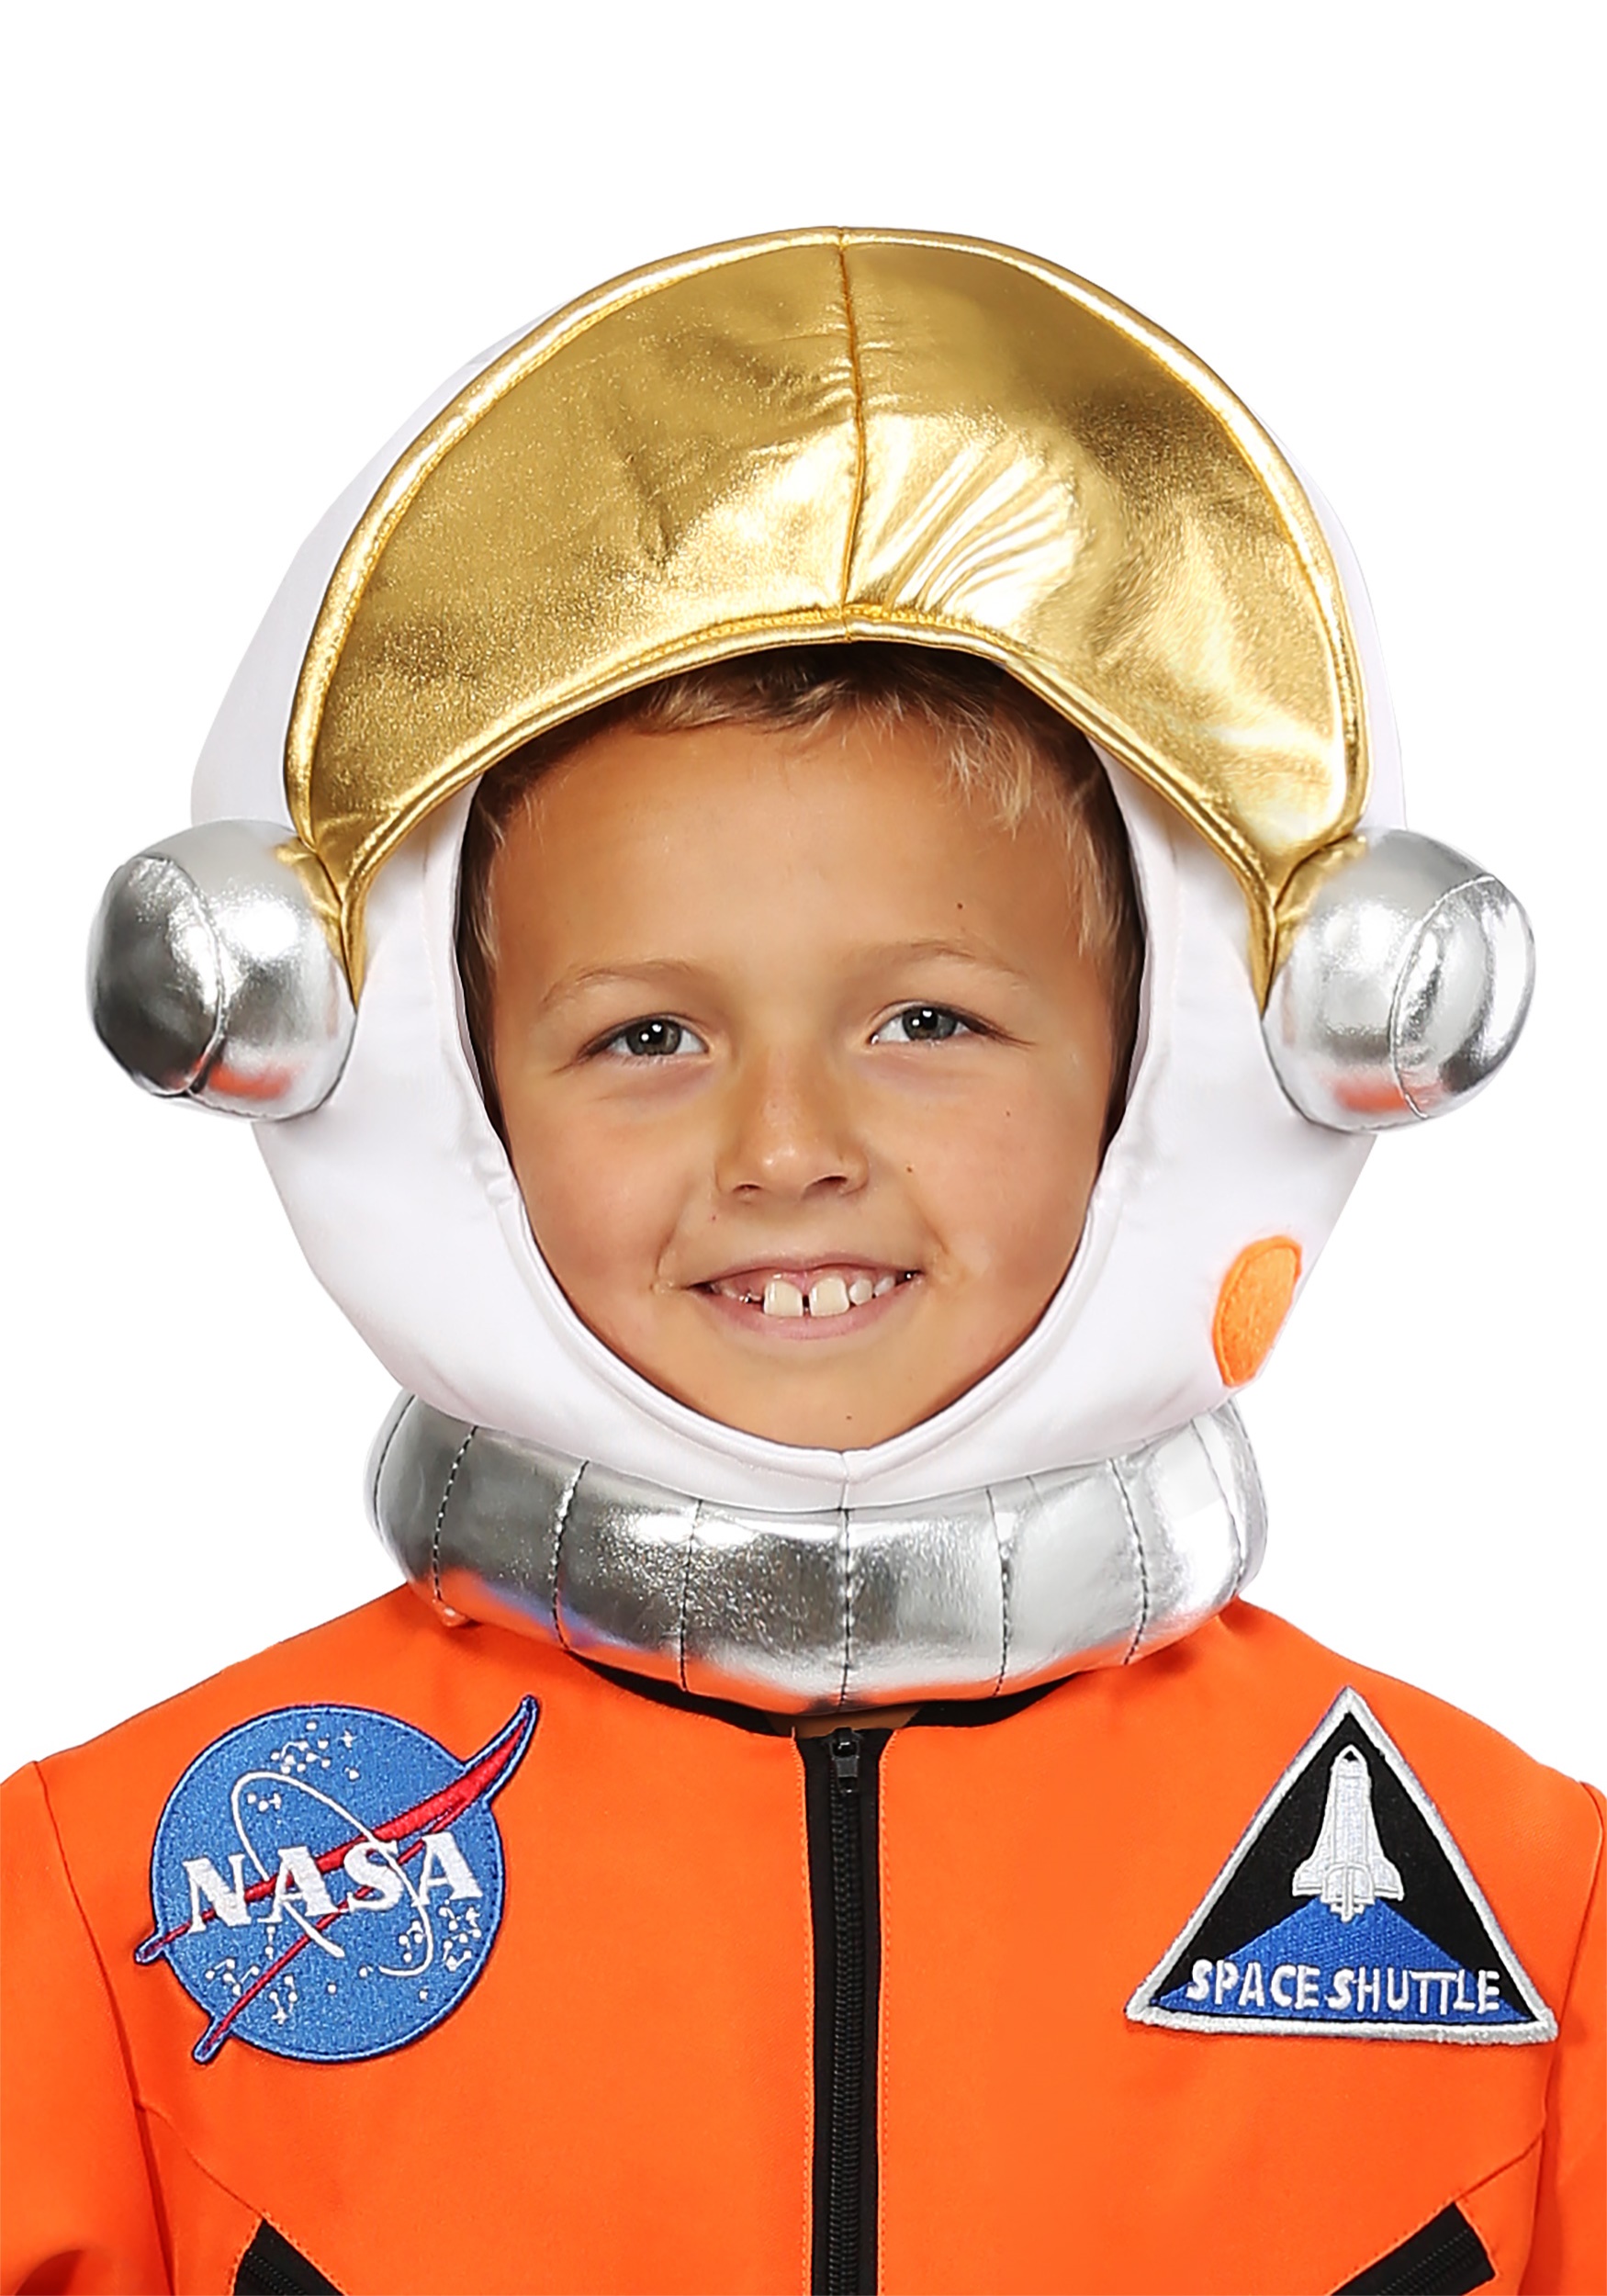 Casco espacial de astronauta para niños con efecto de fotomatón